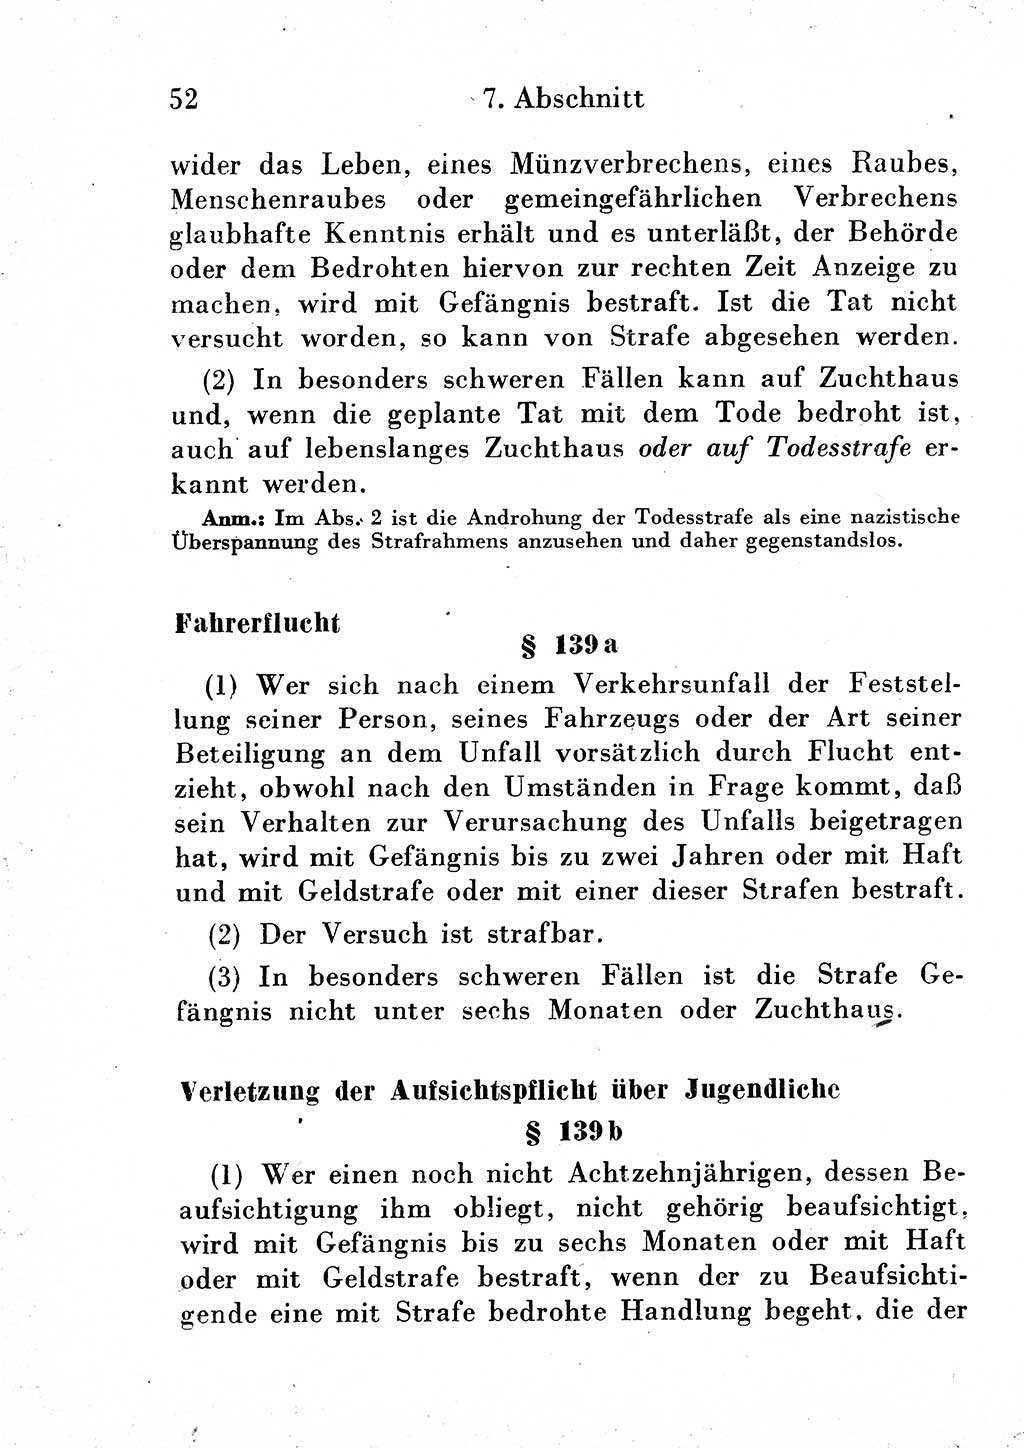 Strafgesetzbuch (StGB) und andere Strafgesetze [Deutsche Demokratische Republik (DDR)] 1954, Seite 52 (StGB Strafges. DDR 1954, S. 52)